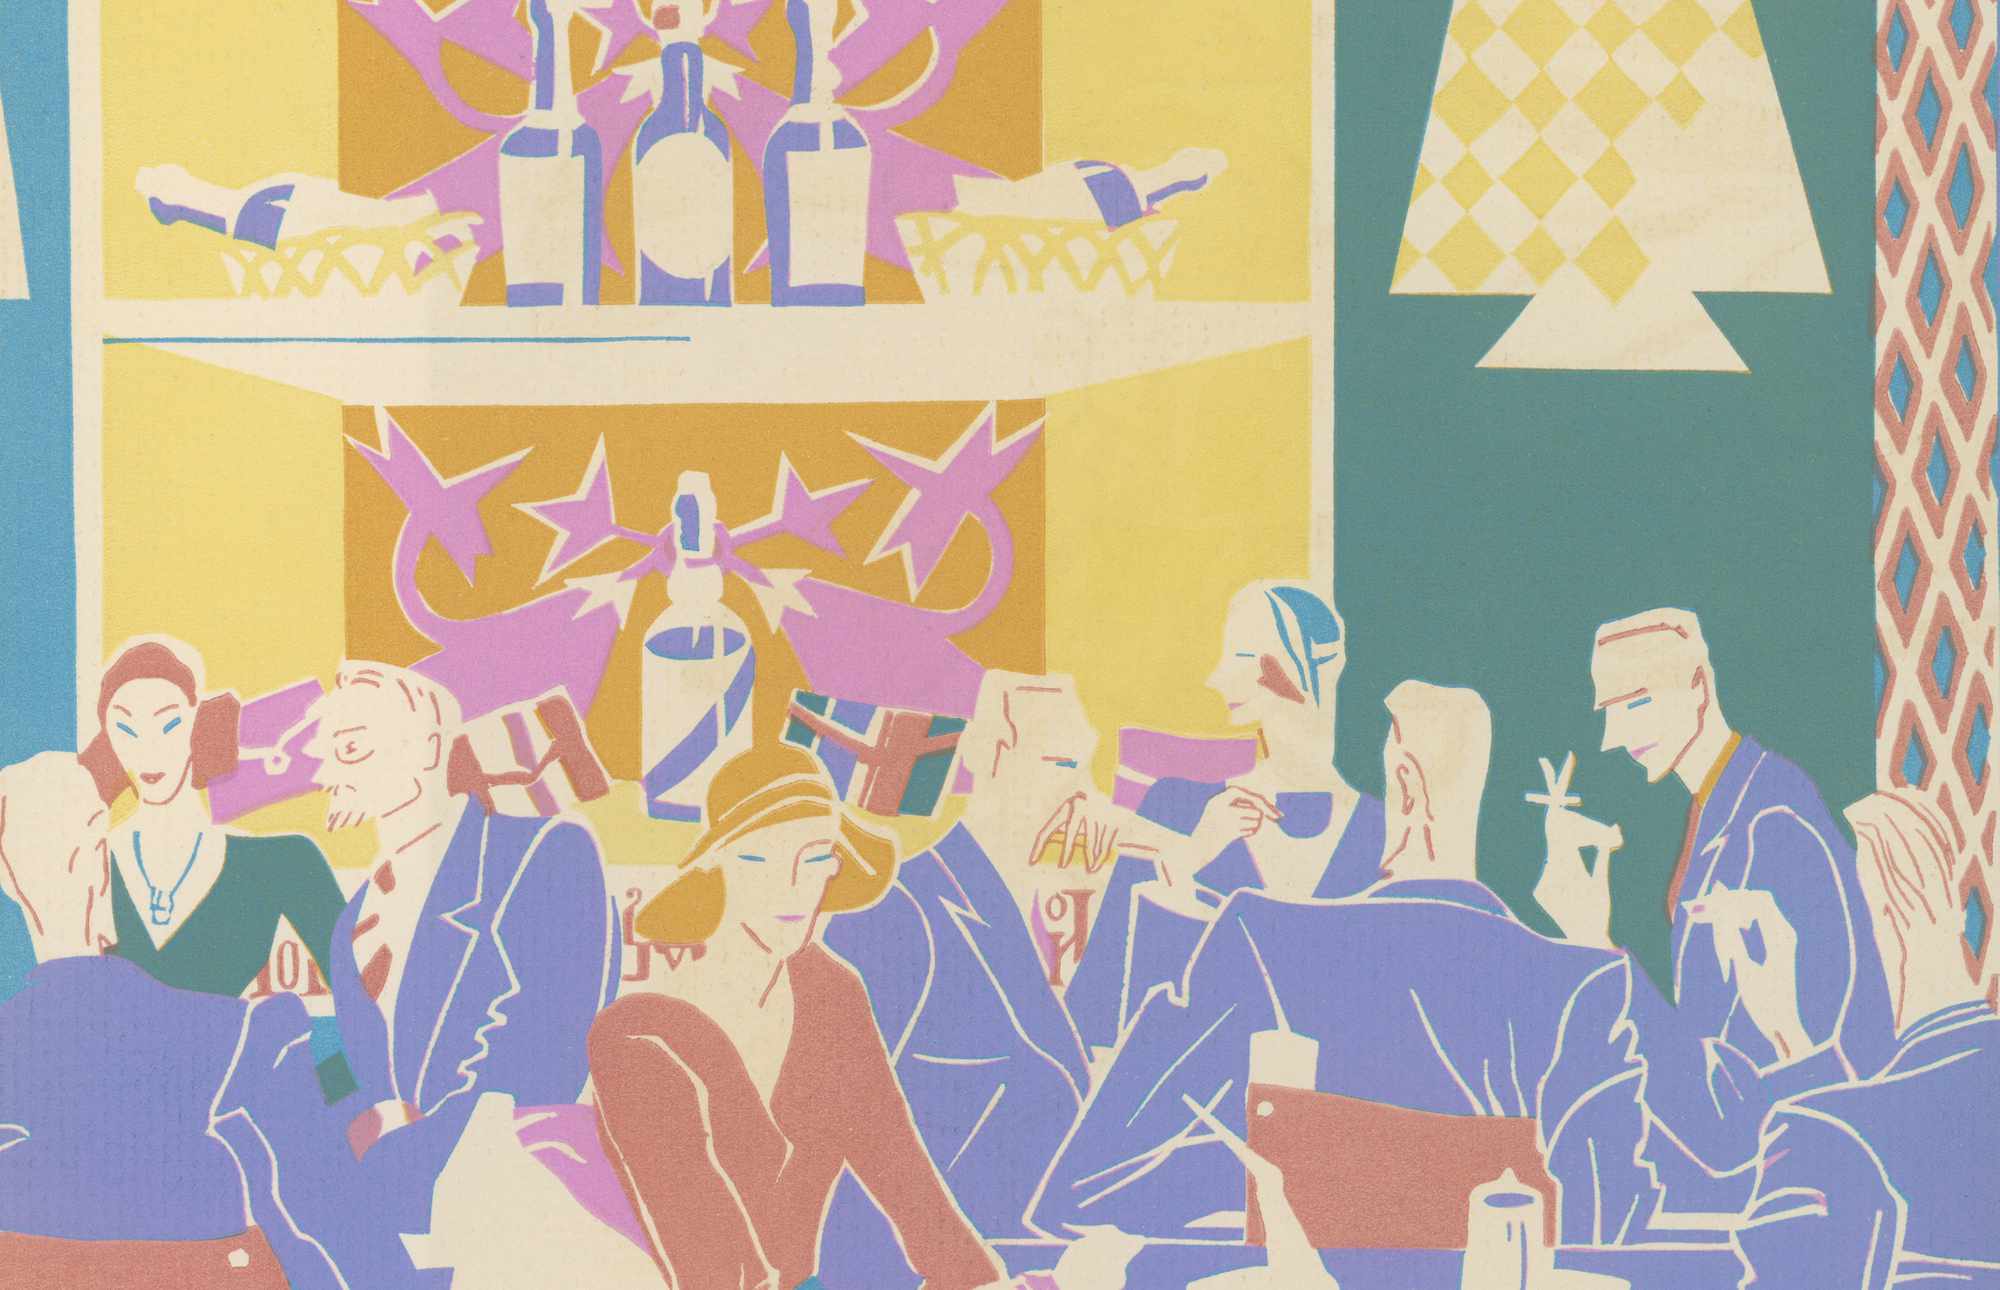 Historiallinen vuoden 1931 silkkipainokuva asiakkaista, jotka istuvat pöydissä art deco -värisessä jazzklubissa